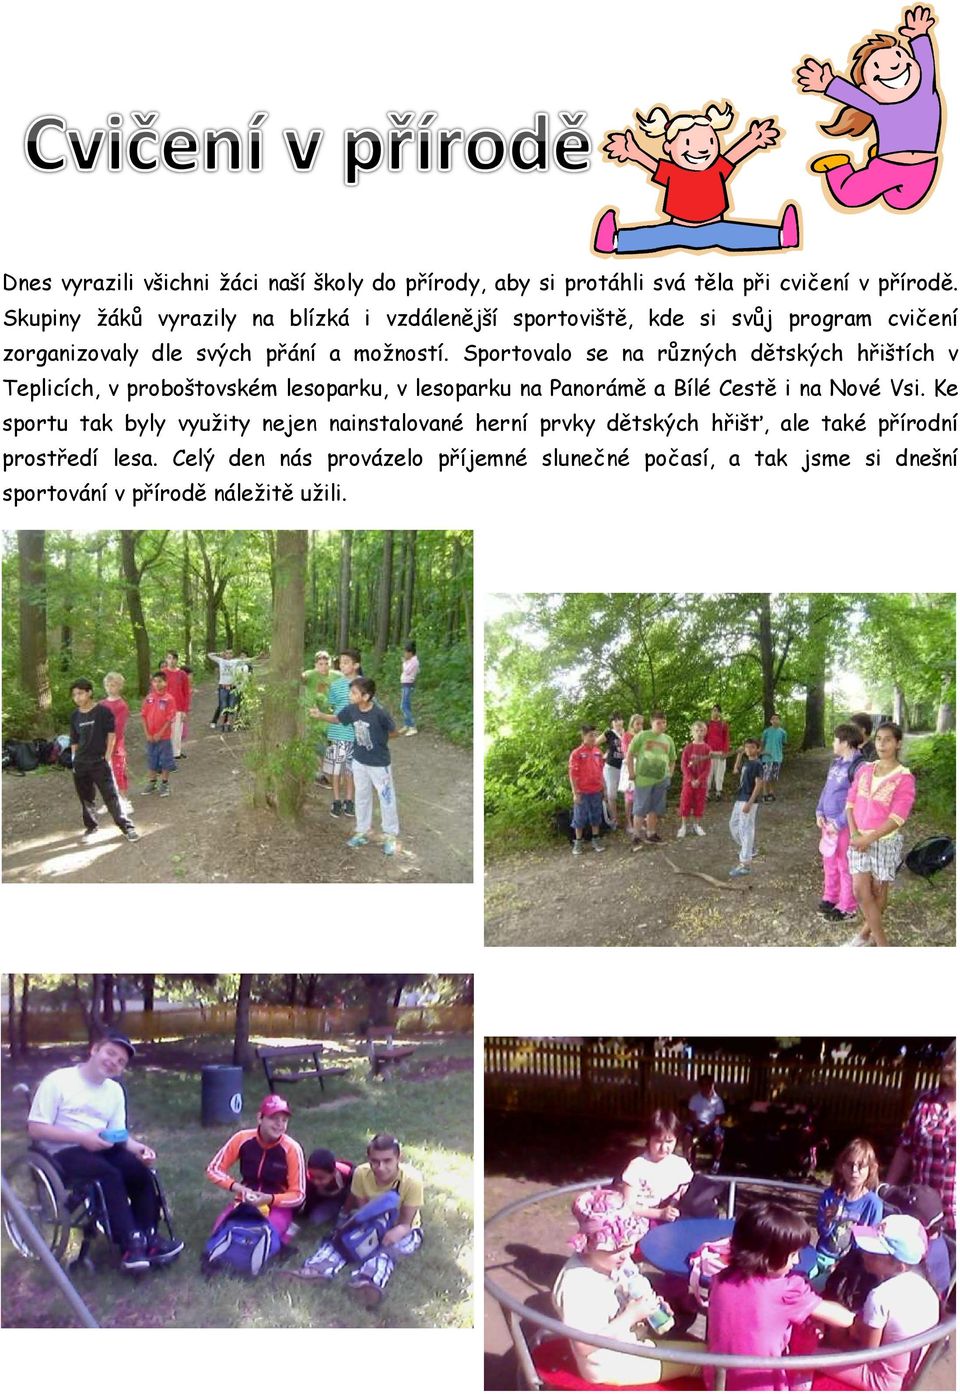 Sportovalo se na různých dětských hřištích v Teplicích, v proboštovském lesoparku, v lesoparku na Panorámě a Bílé Cestě i na Nové Vsi.